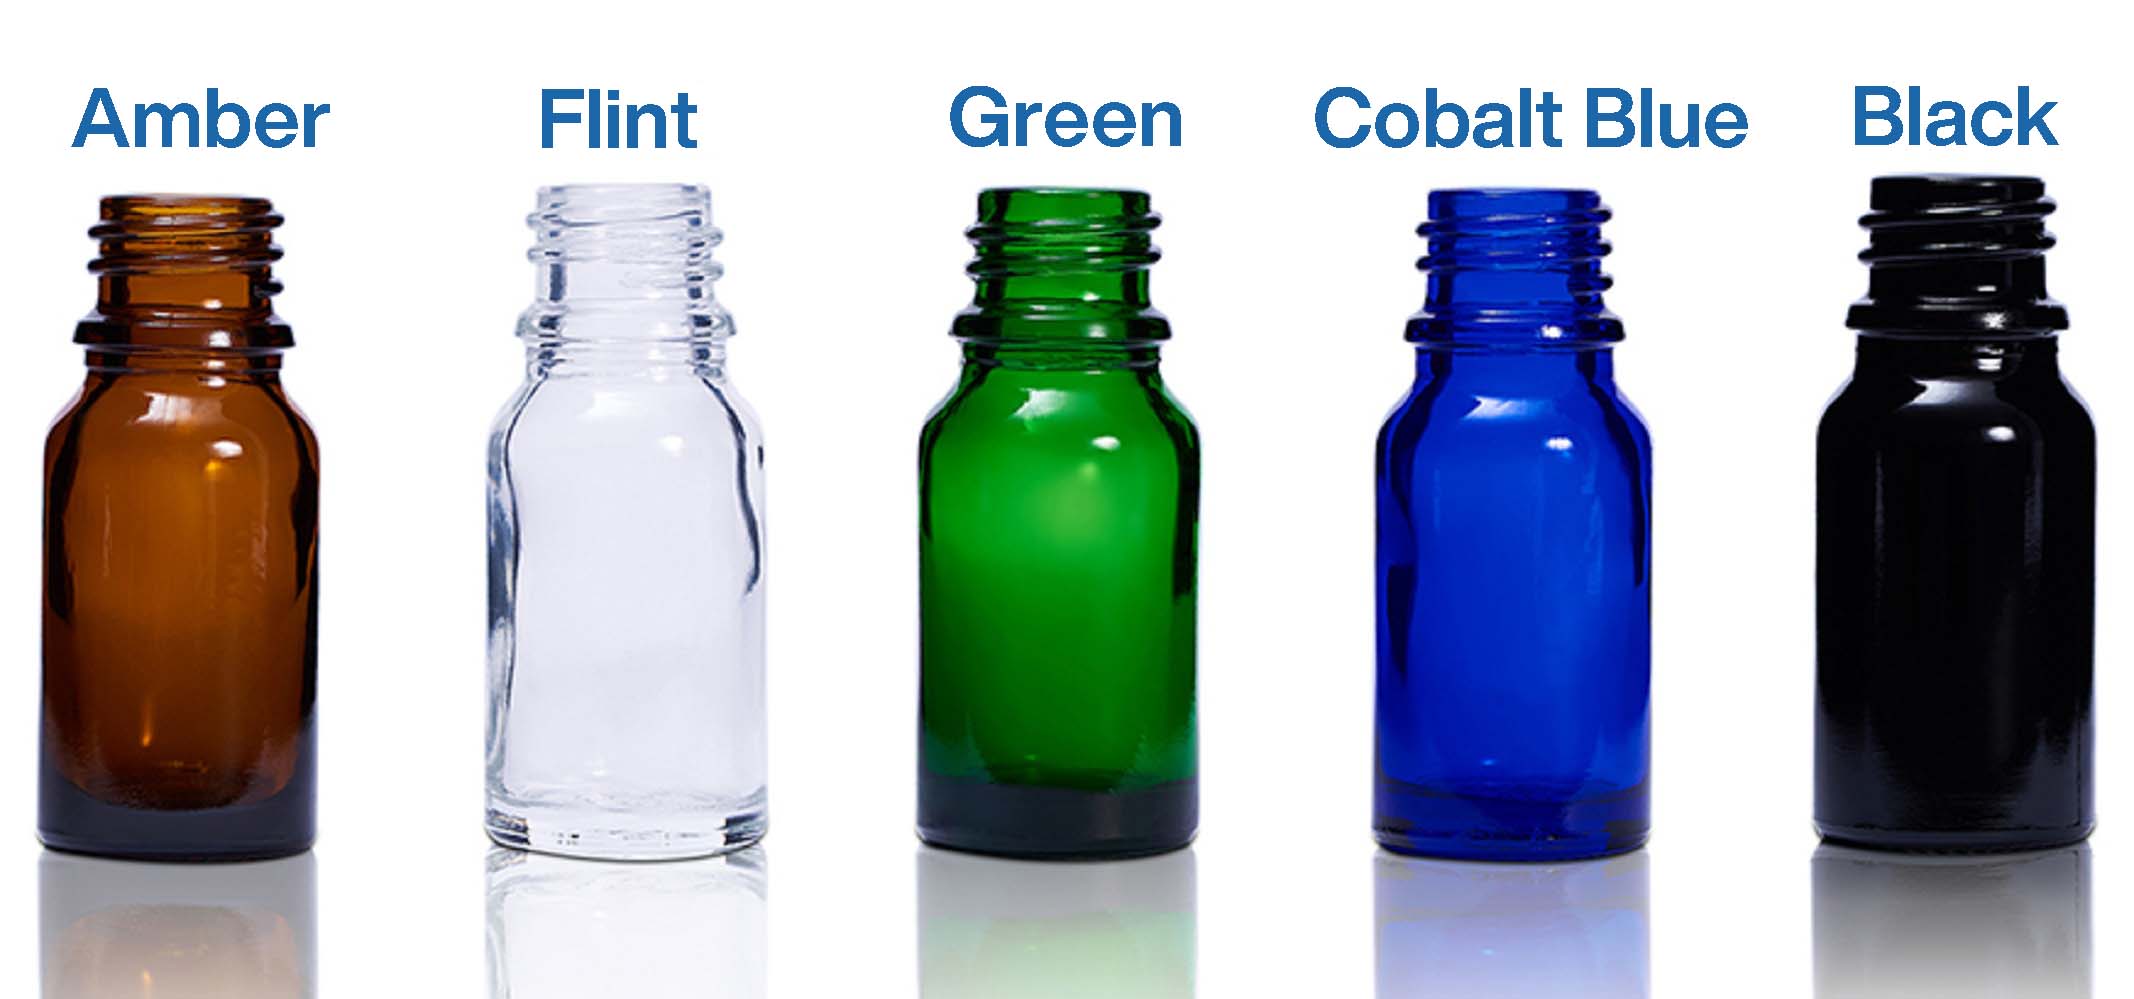 Colors for glass bottles.jpg